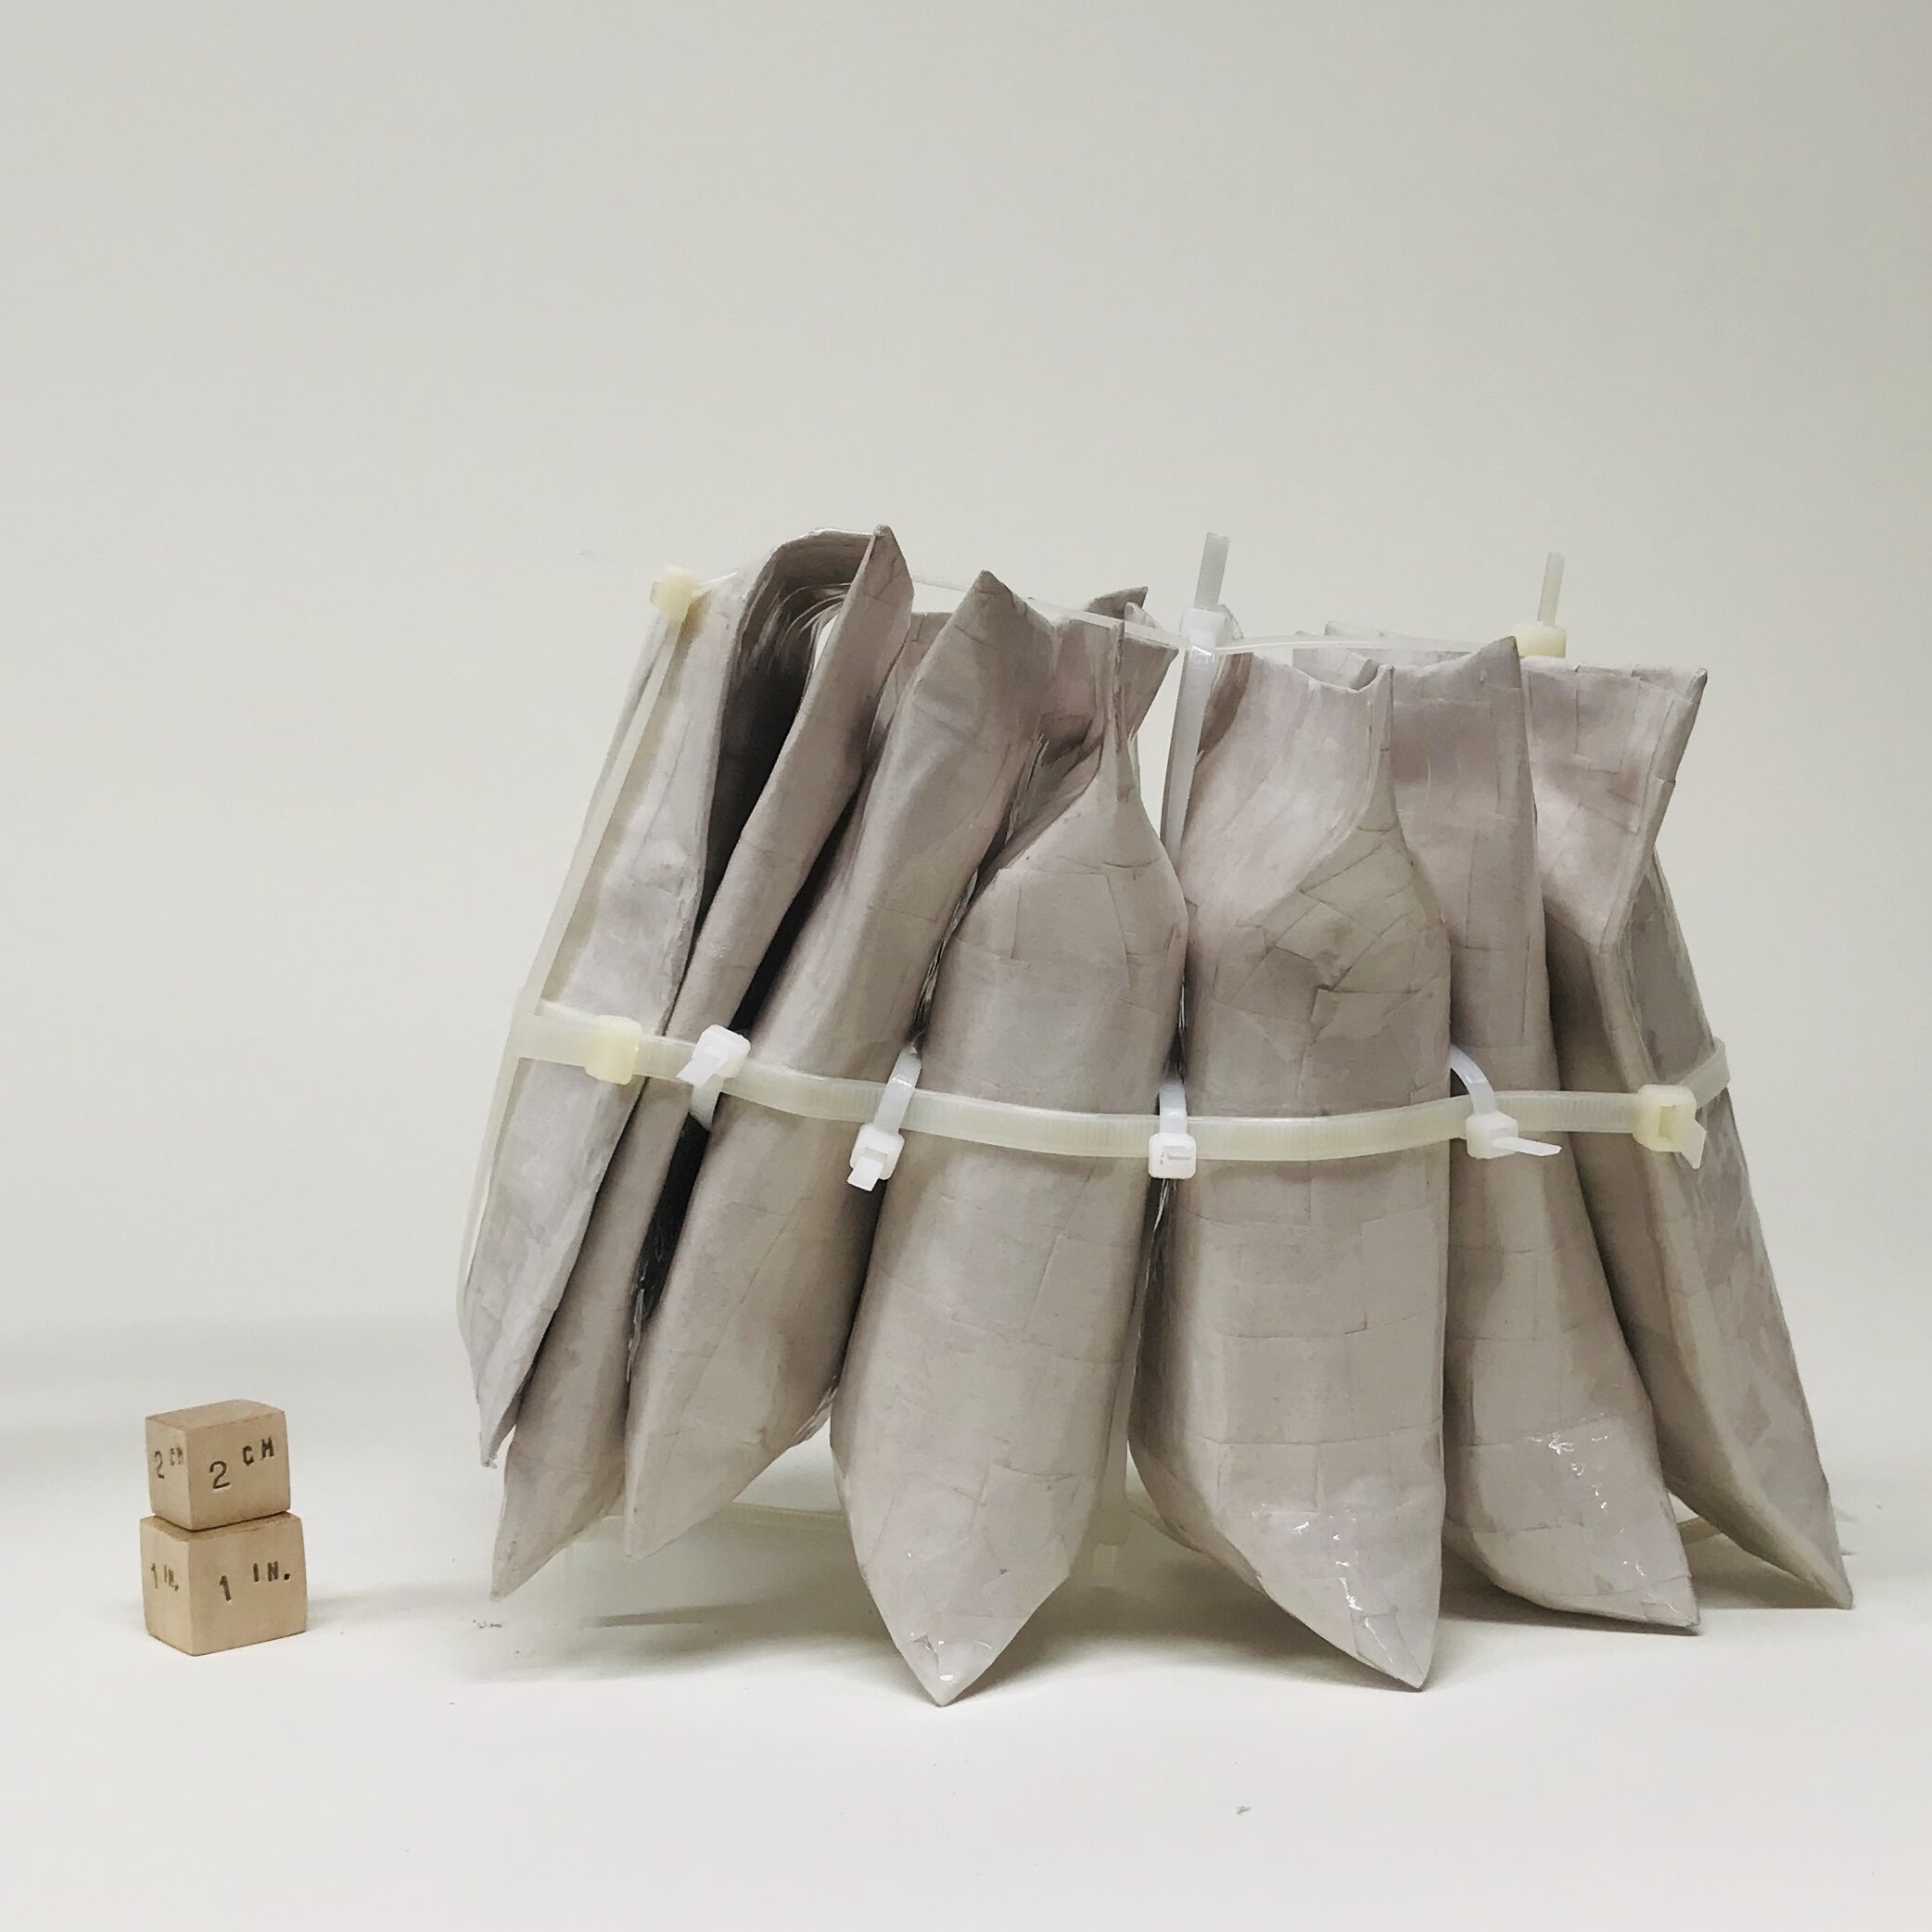 Paper Bag Sculpture by Bill Enck